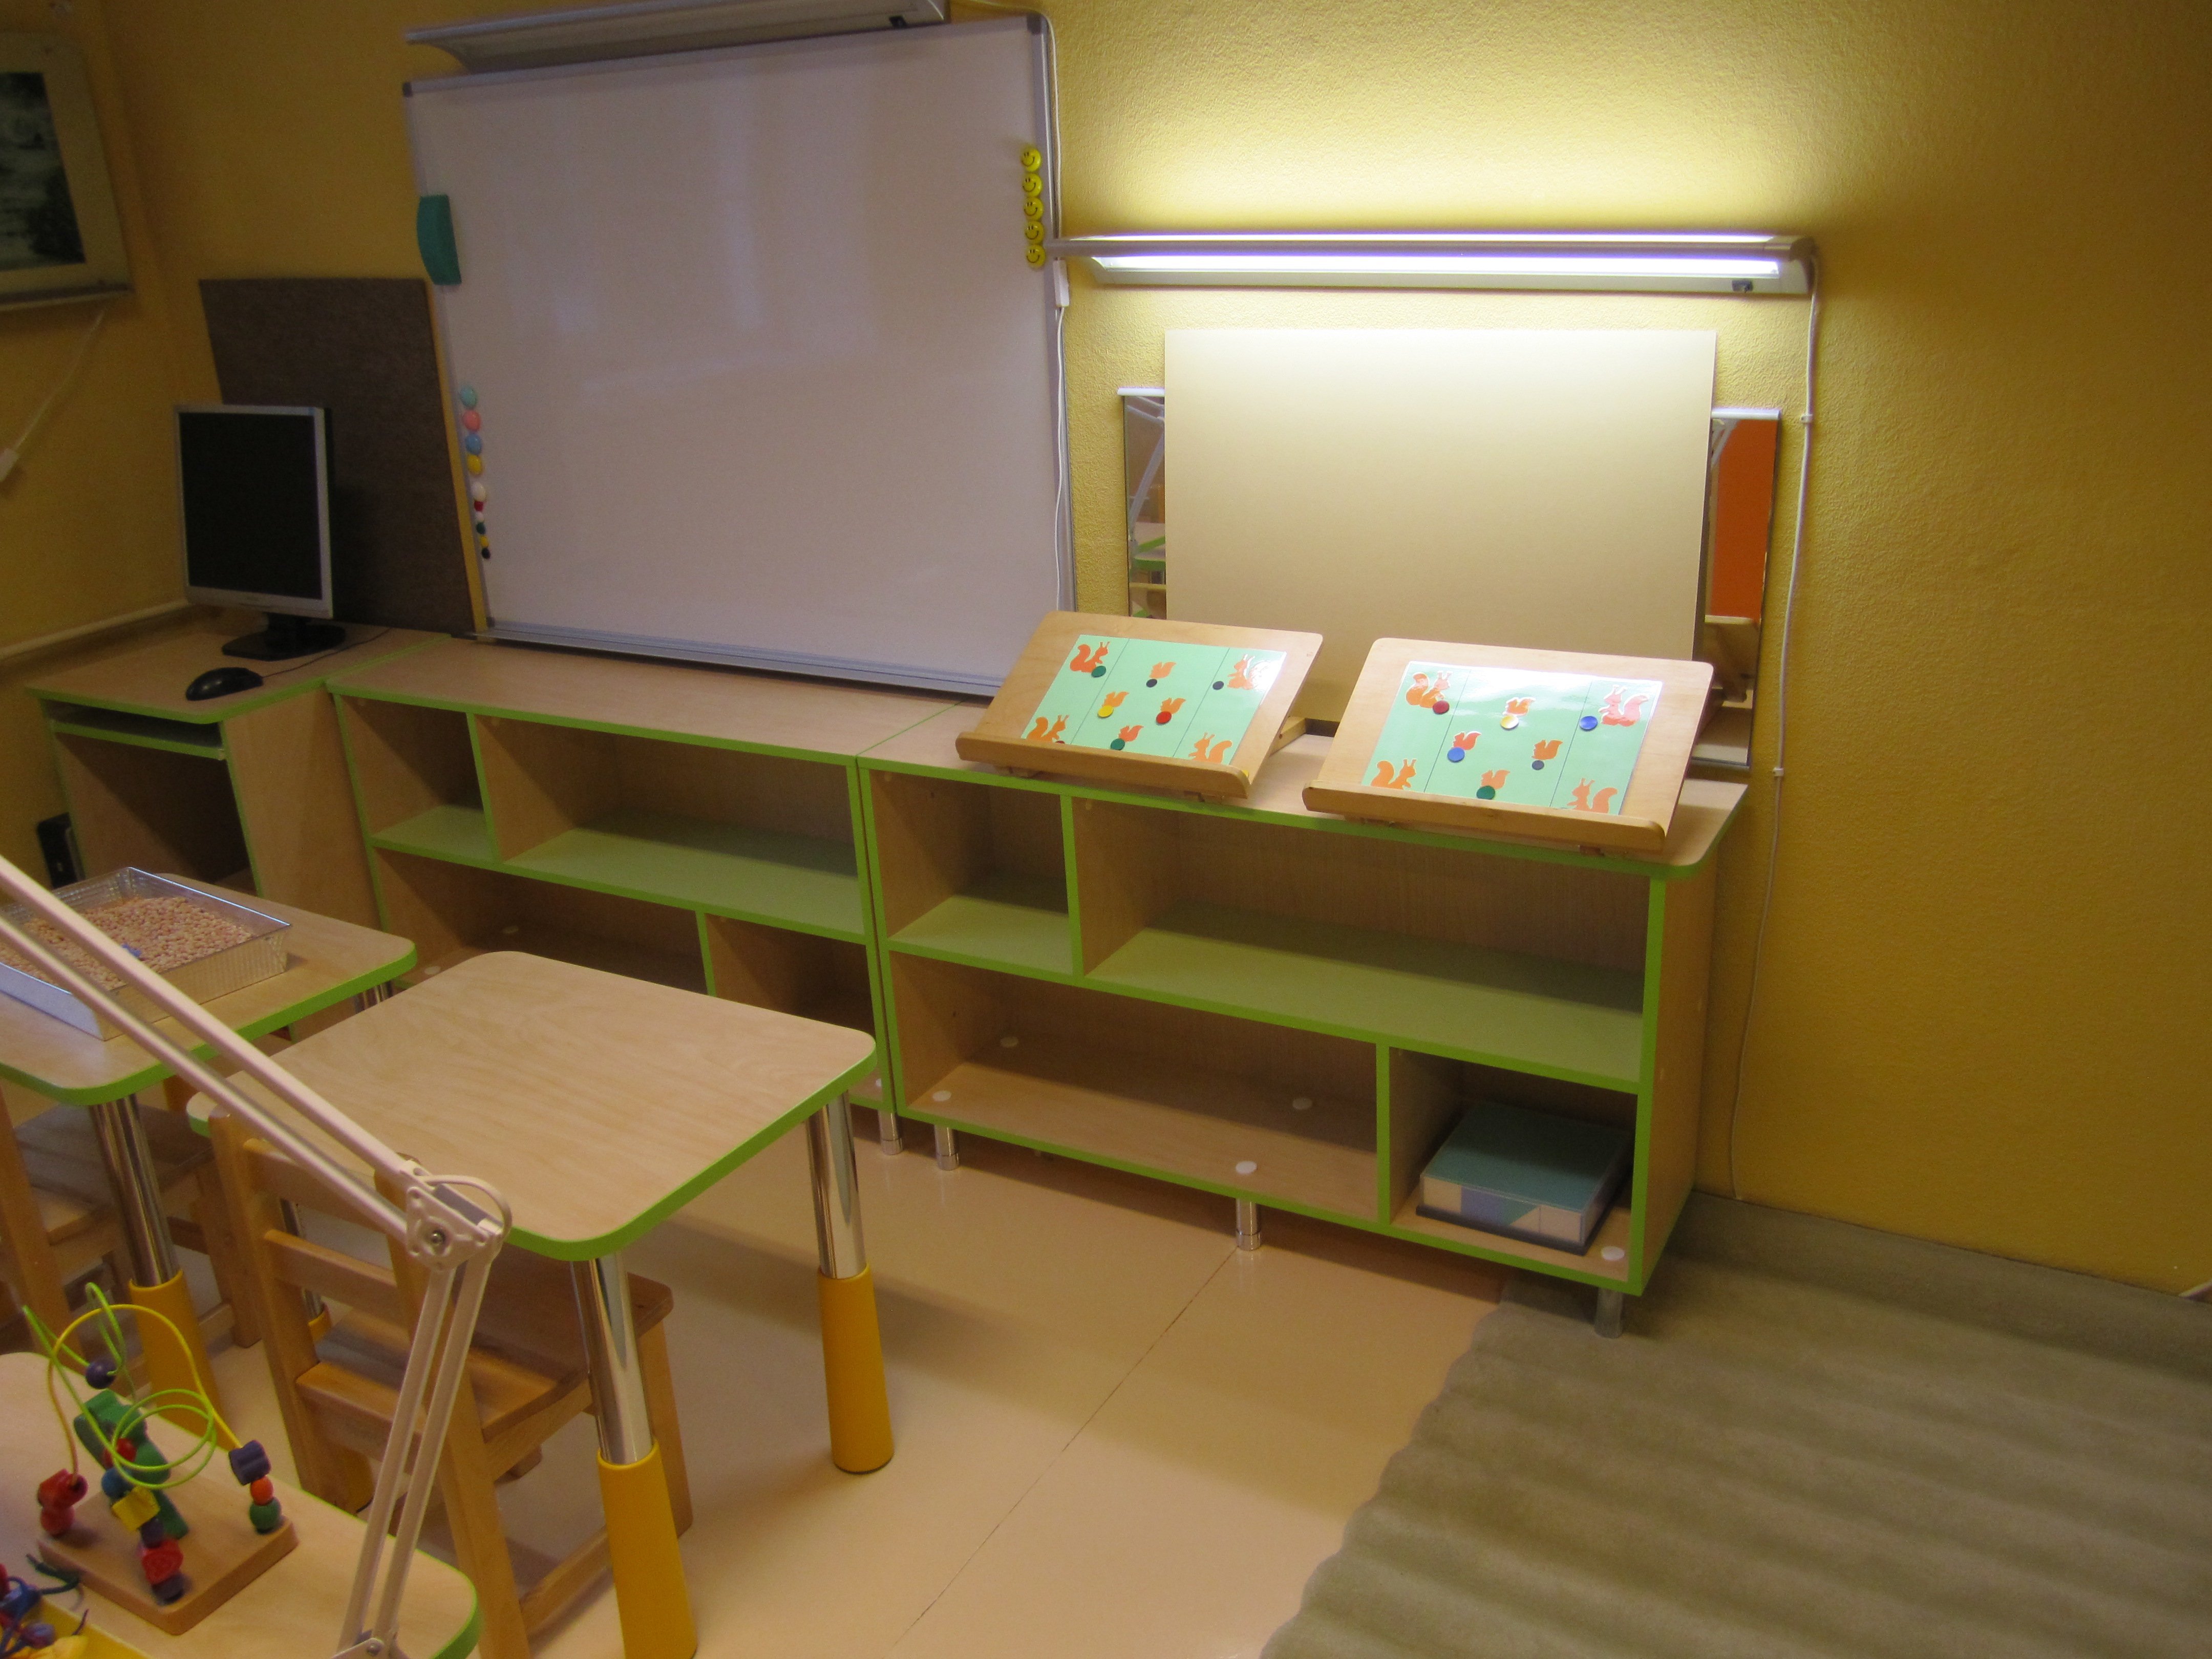 Логопед мебель. Мебель для логопедического кабинета в детском саду. Шкаф в кабинет логопеда. Мебель для кабинета дефектолога в детском саду. Шкафы для логопедического кабинета.